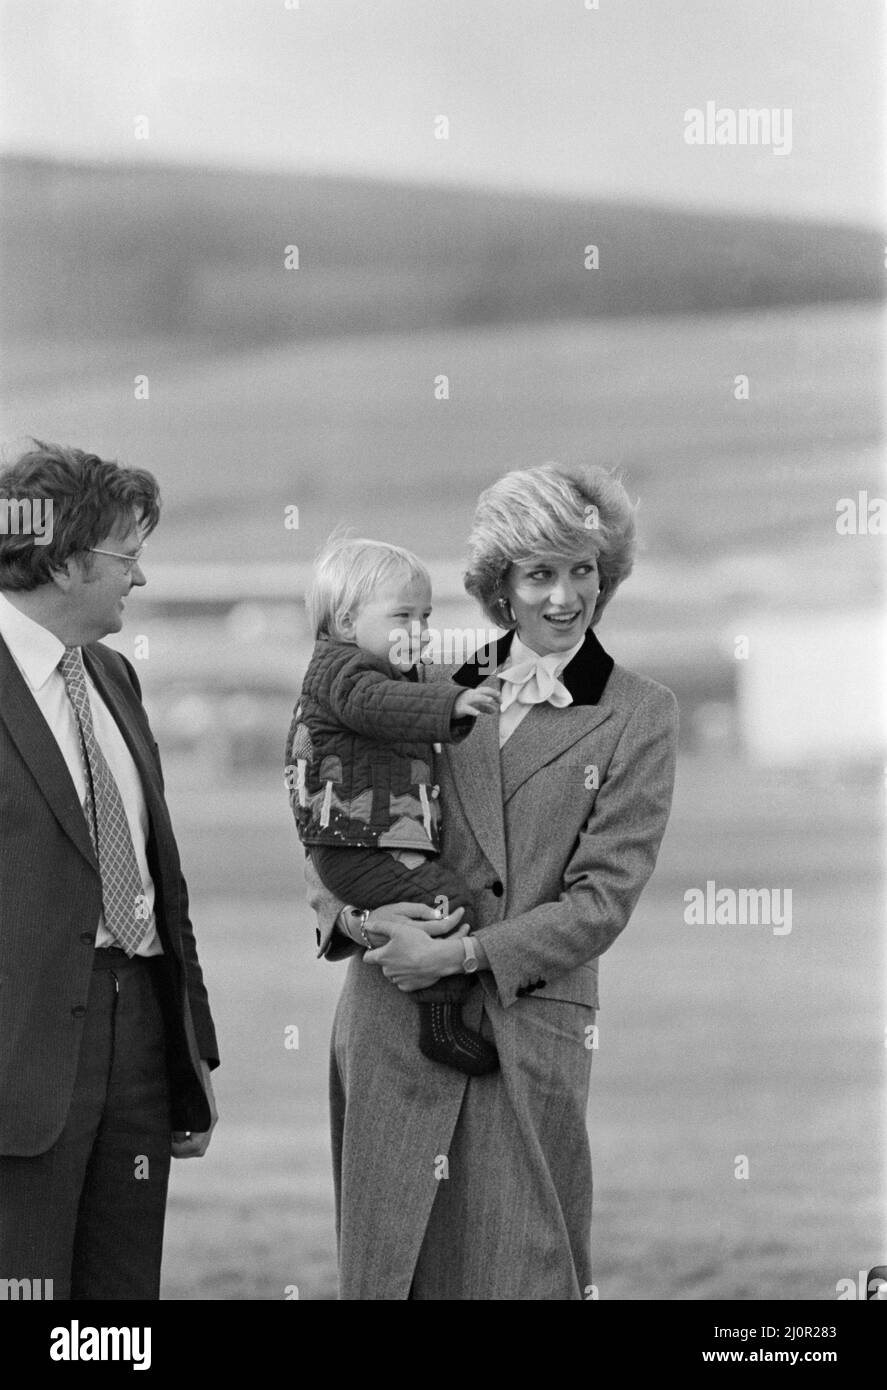 Ihre Königliche Hoheit Prinzessin Diana, die Prinzessin von Wales, hält ihren Sohn Prinz William fest, bevor sie am Flughafen Aberdeen, Schottland, in das königliche Flugzeug steigen. Bild 3 von 4 in dieser Sequenz von 4 Bildern bittet Prinzessin Diana Prinz William zu winken. Er versteht es nicht, also winkt er nicht. Und so winkt Prinzessin Diana, und bald winkt Prinz William mit ihr. Kopiert seine Mutter. Dies ist möglicherweise eine frühe, sogar erste, königliche Welle von einem damals 16. Monate alten Prinz William. Bild aufgenommen am 24.. Oktober 1983 Stockfoto